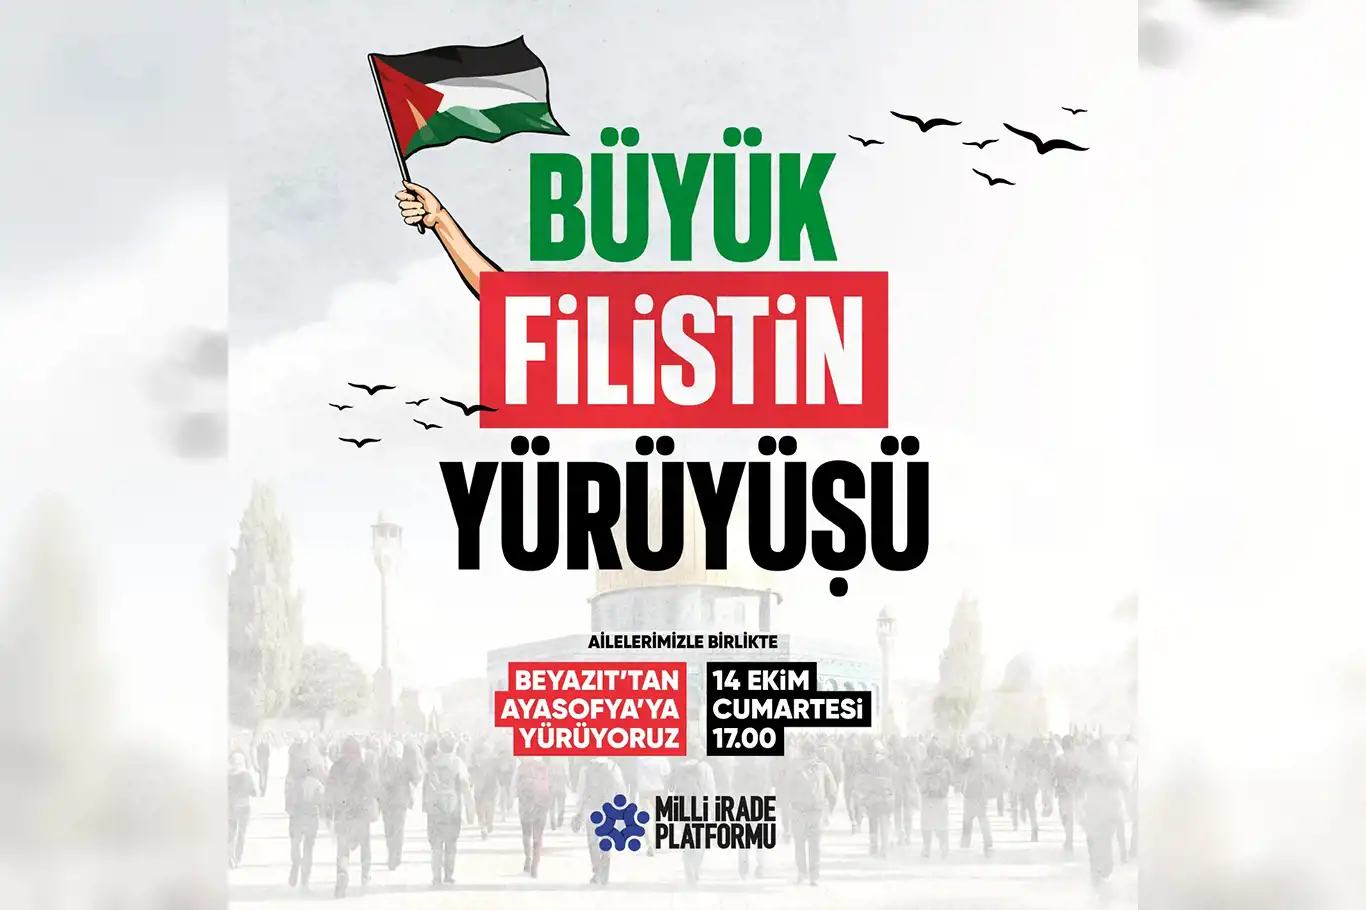 İstanbul'da "Büyük Filistin Yürüyüşü" yapılacak